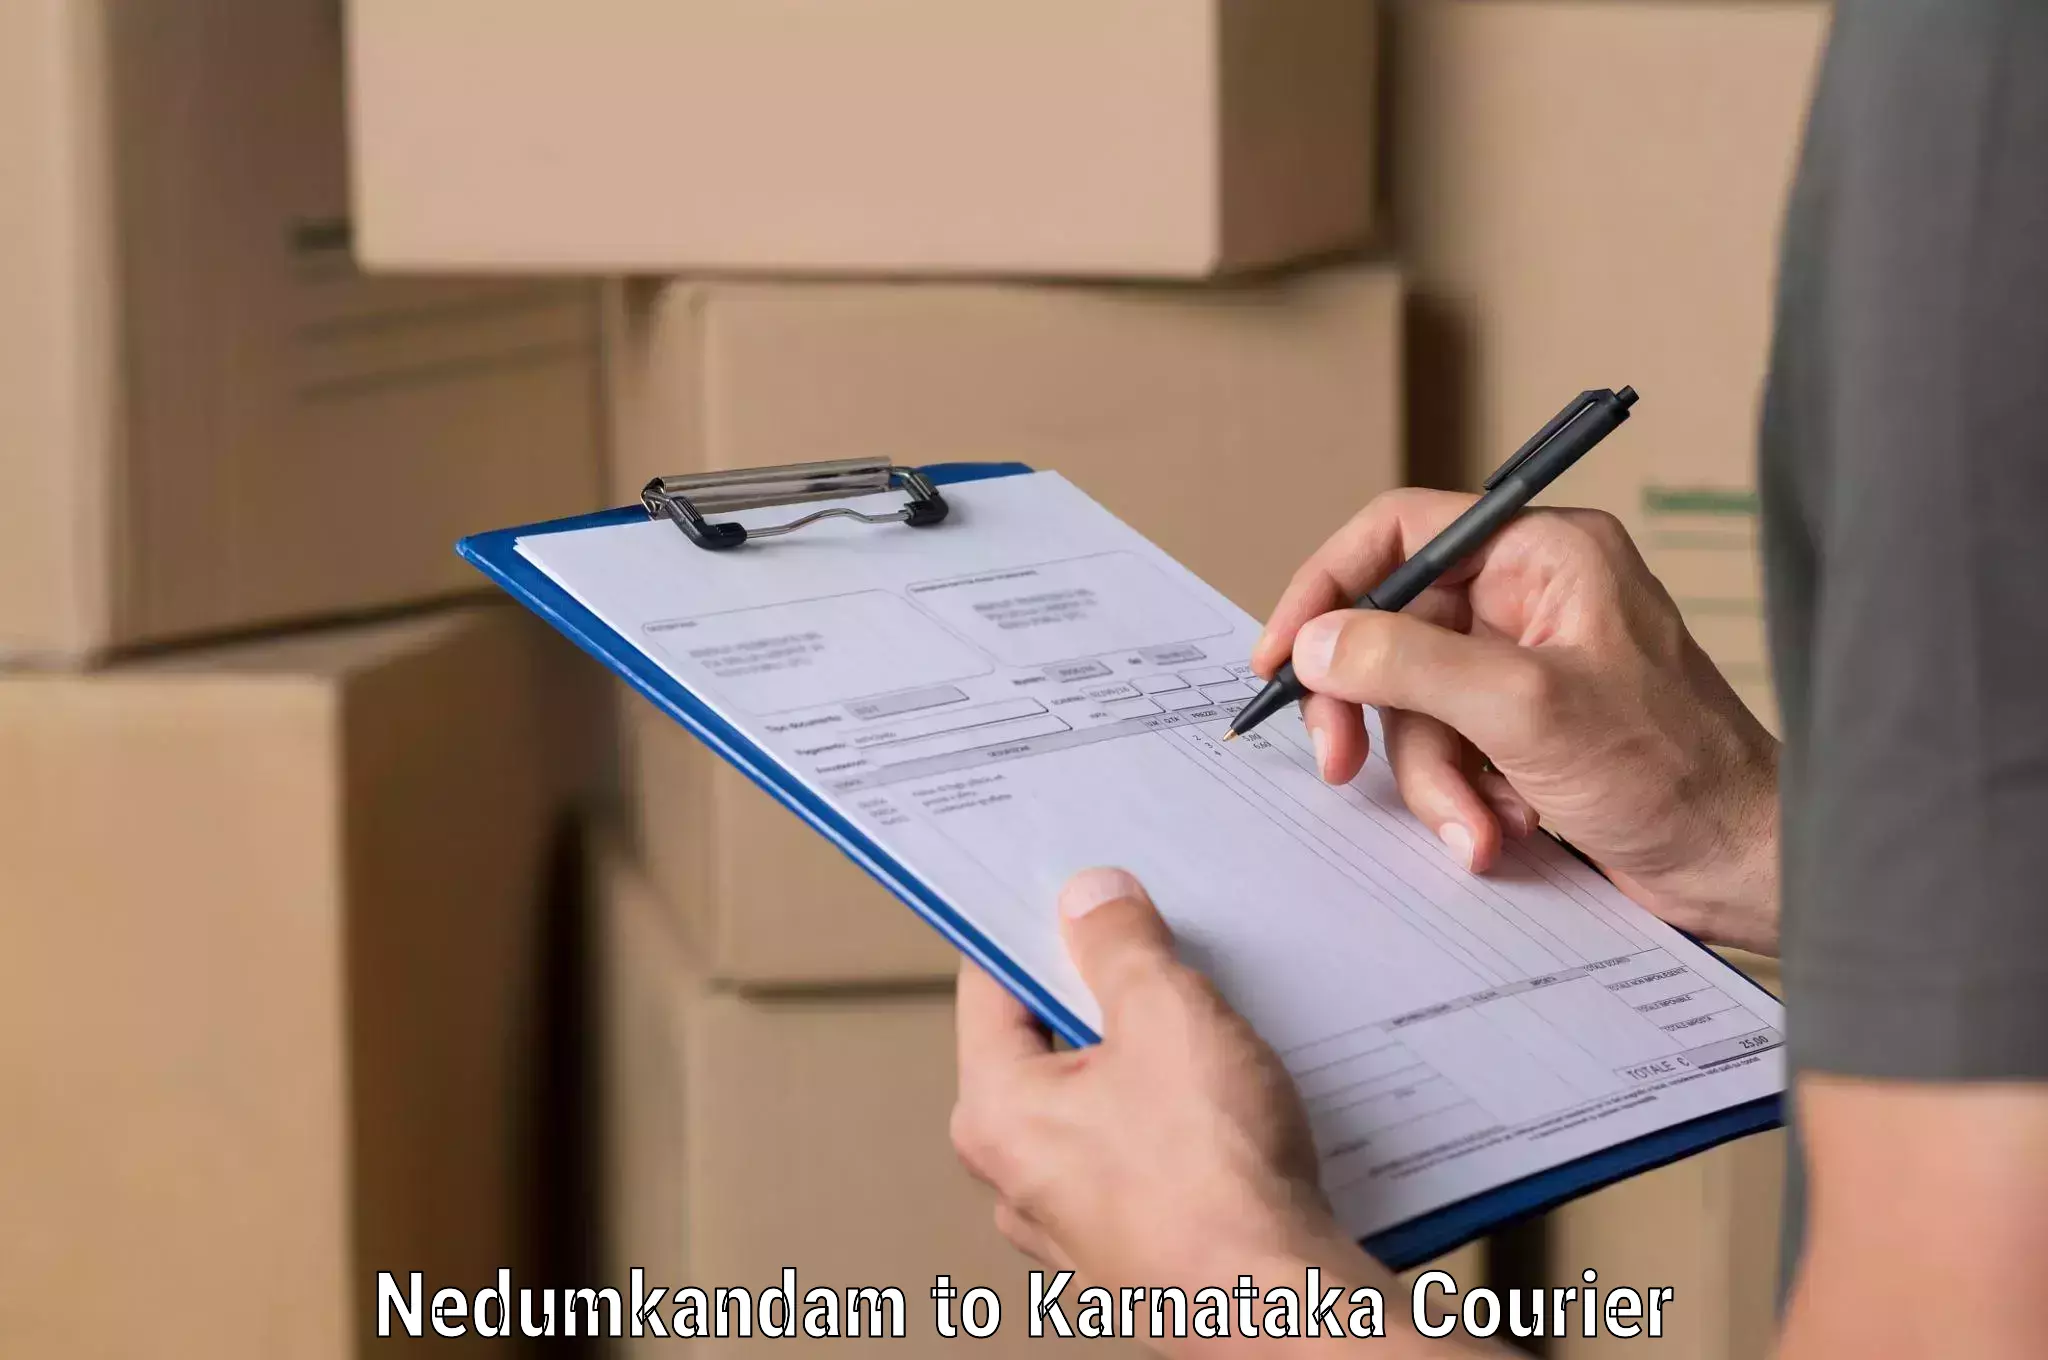 Custom courier packaging in Nedumkandam to Karnataka